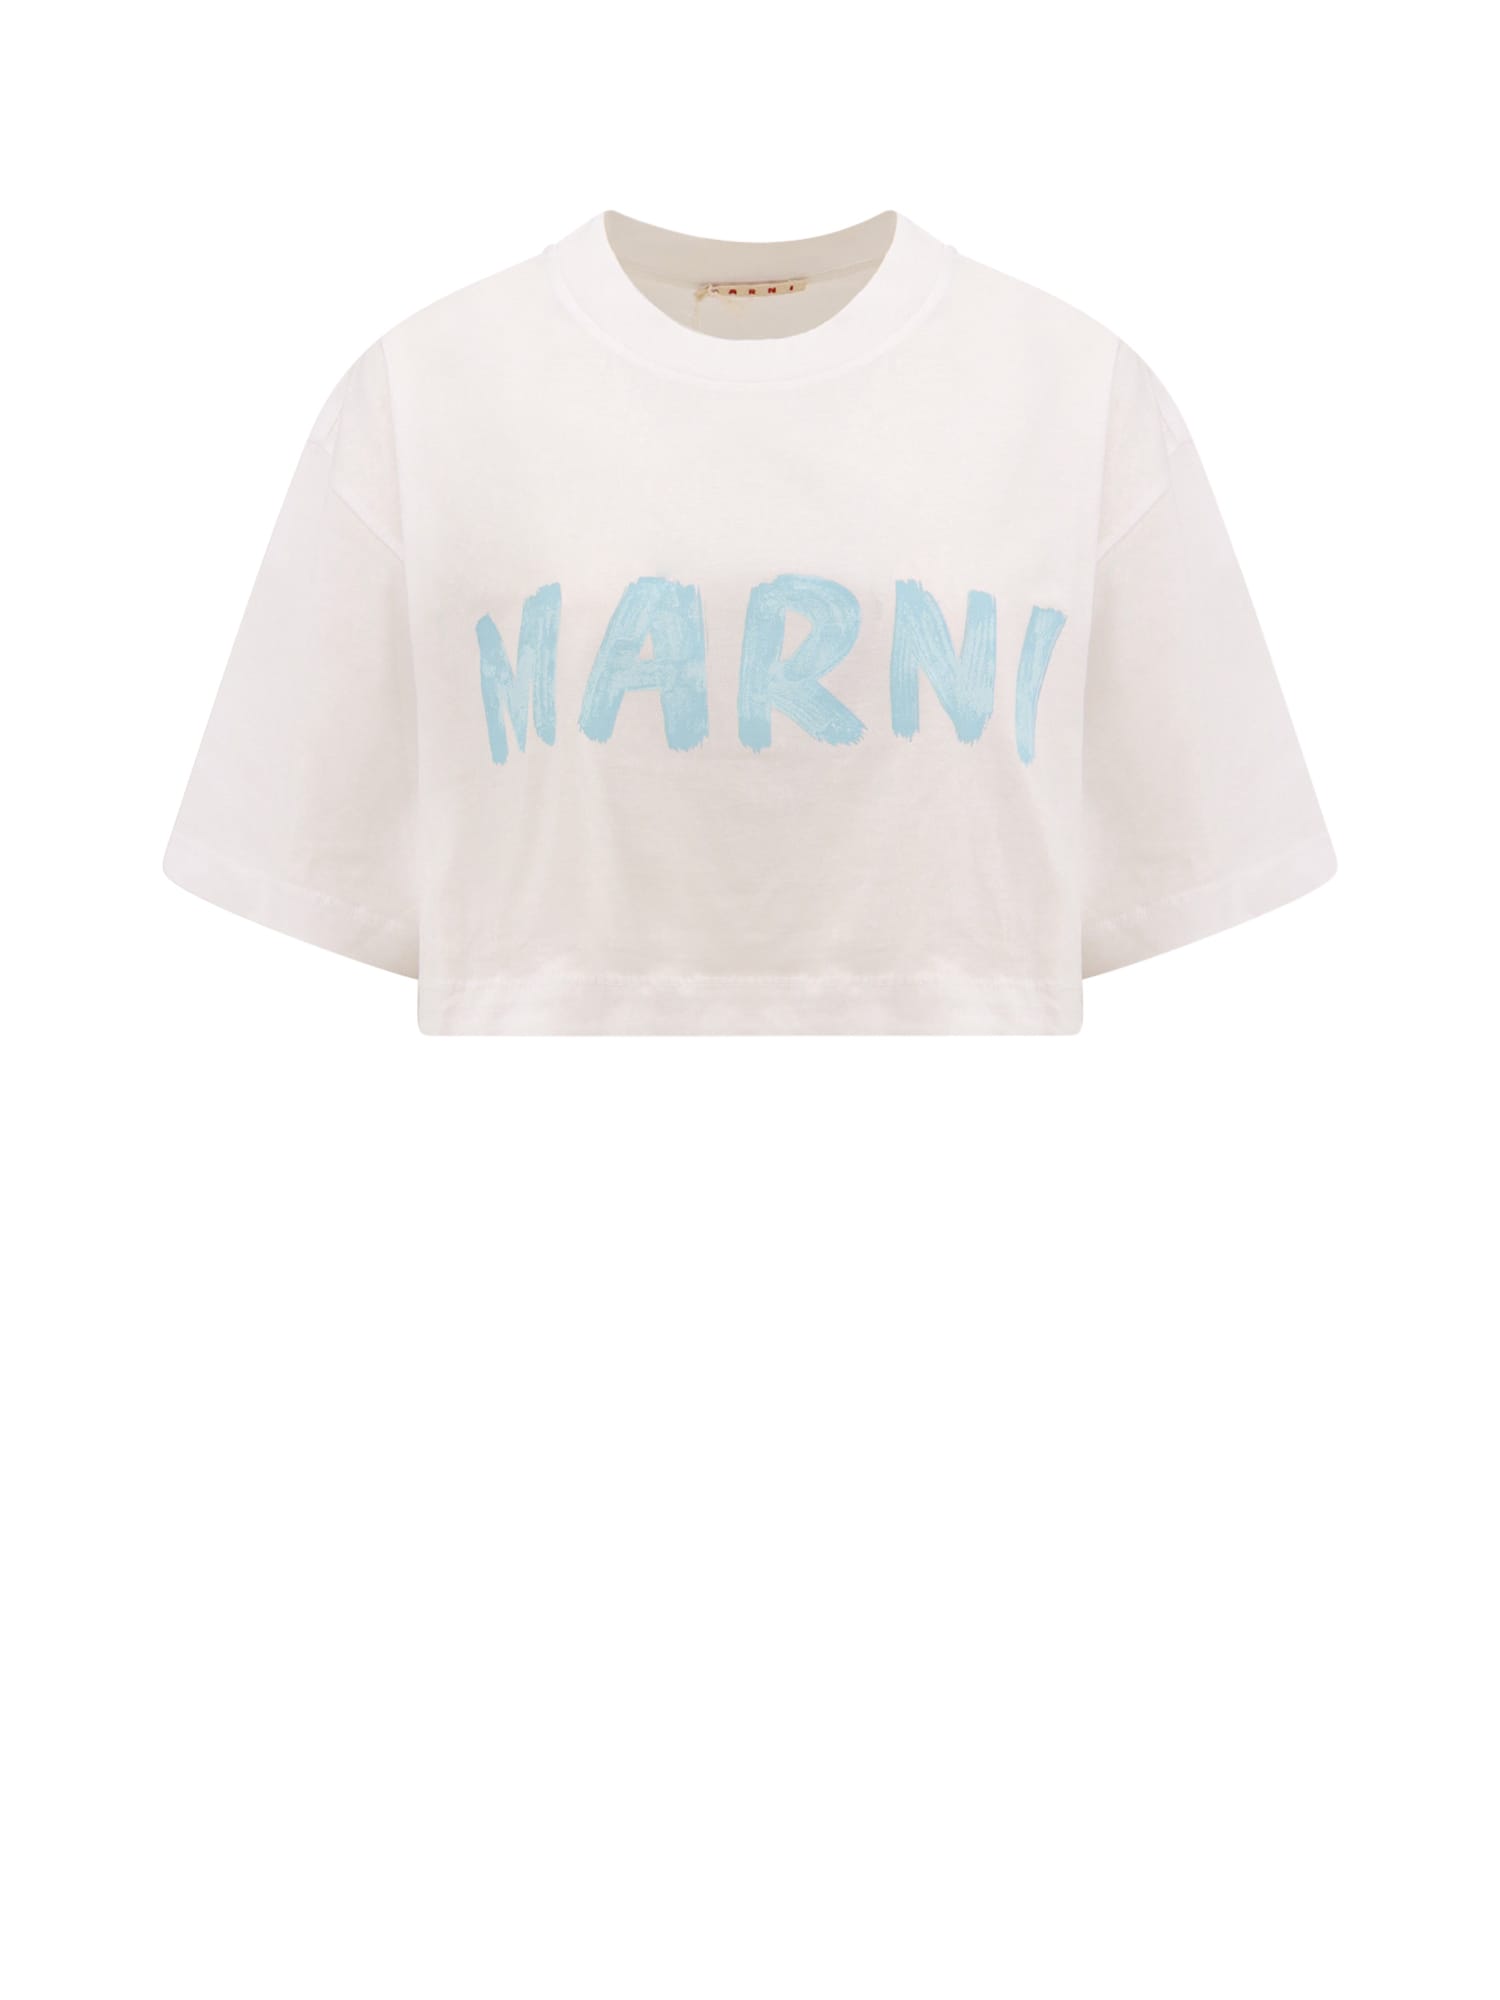 Shop Marni T-shirt In White